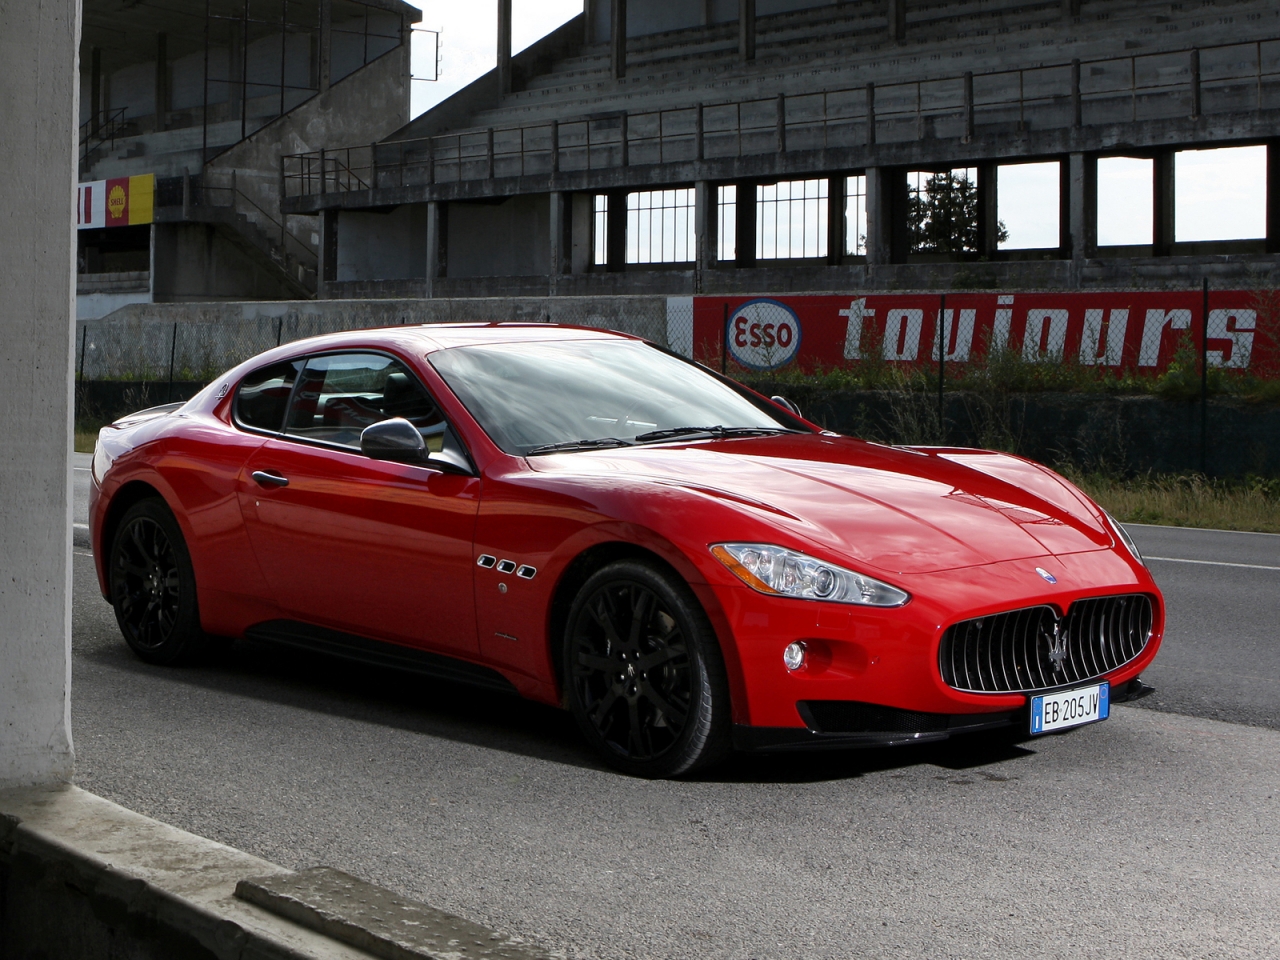 Red Maserati GranTurismo S  for 1280 x 960 resolution